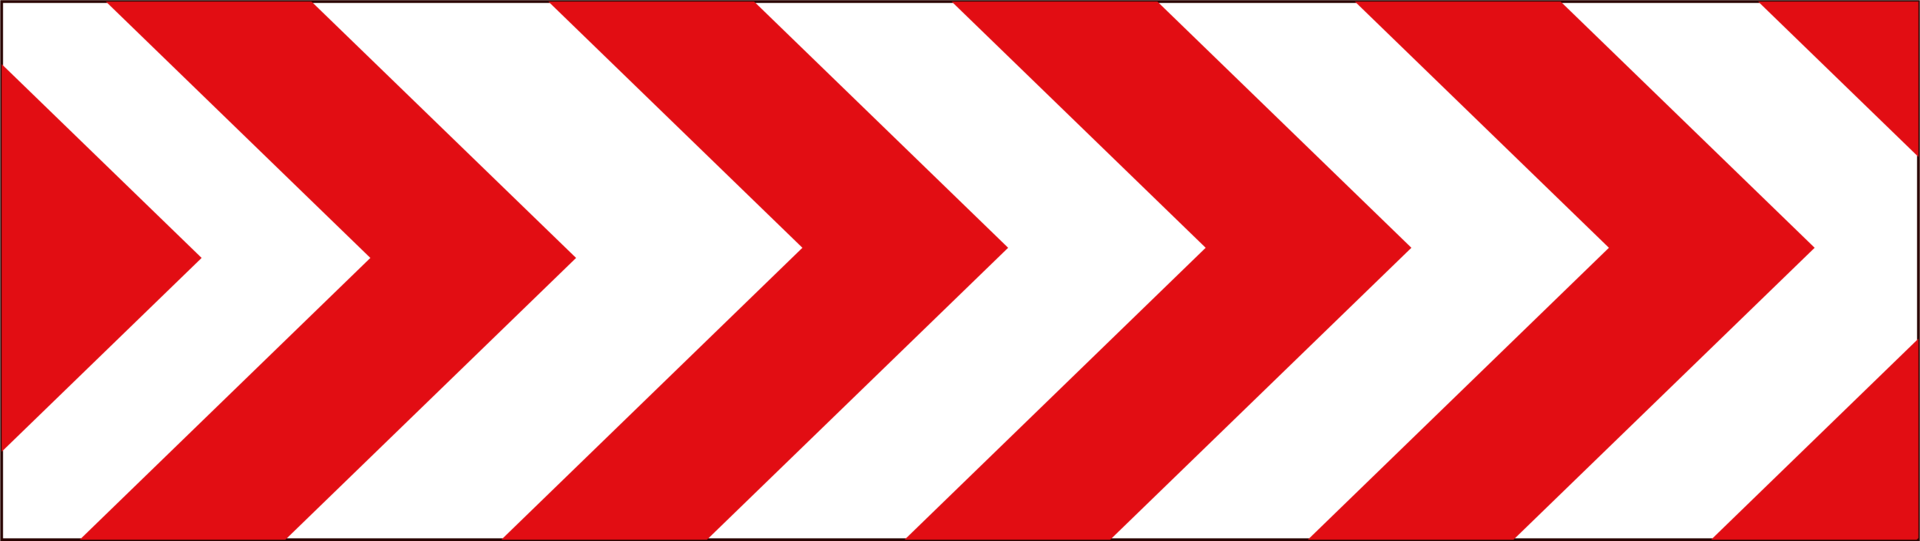 progettazione di segnali stradali e avvertenze icona colorata rossa e bianca png